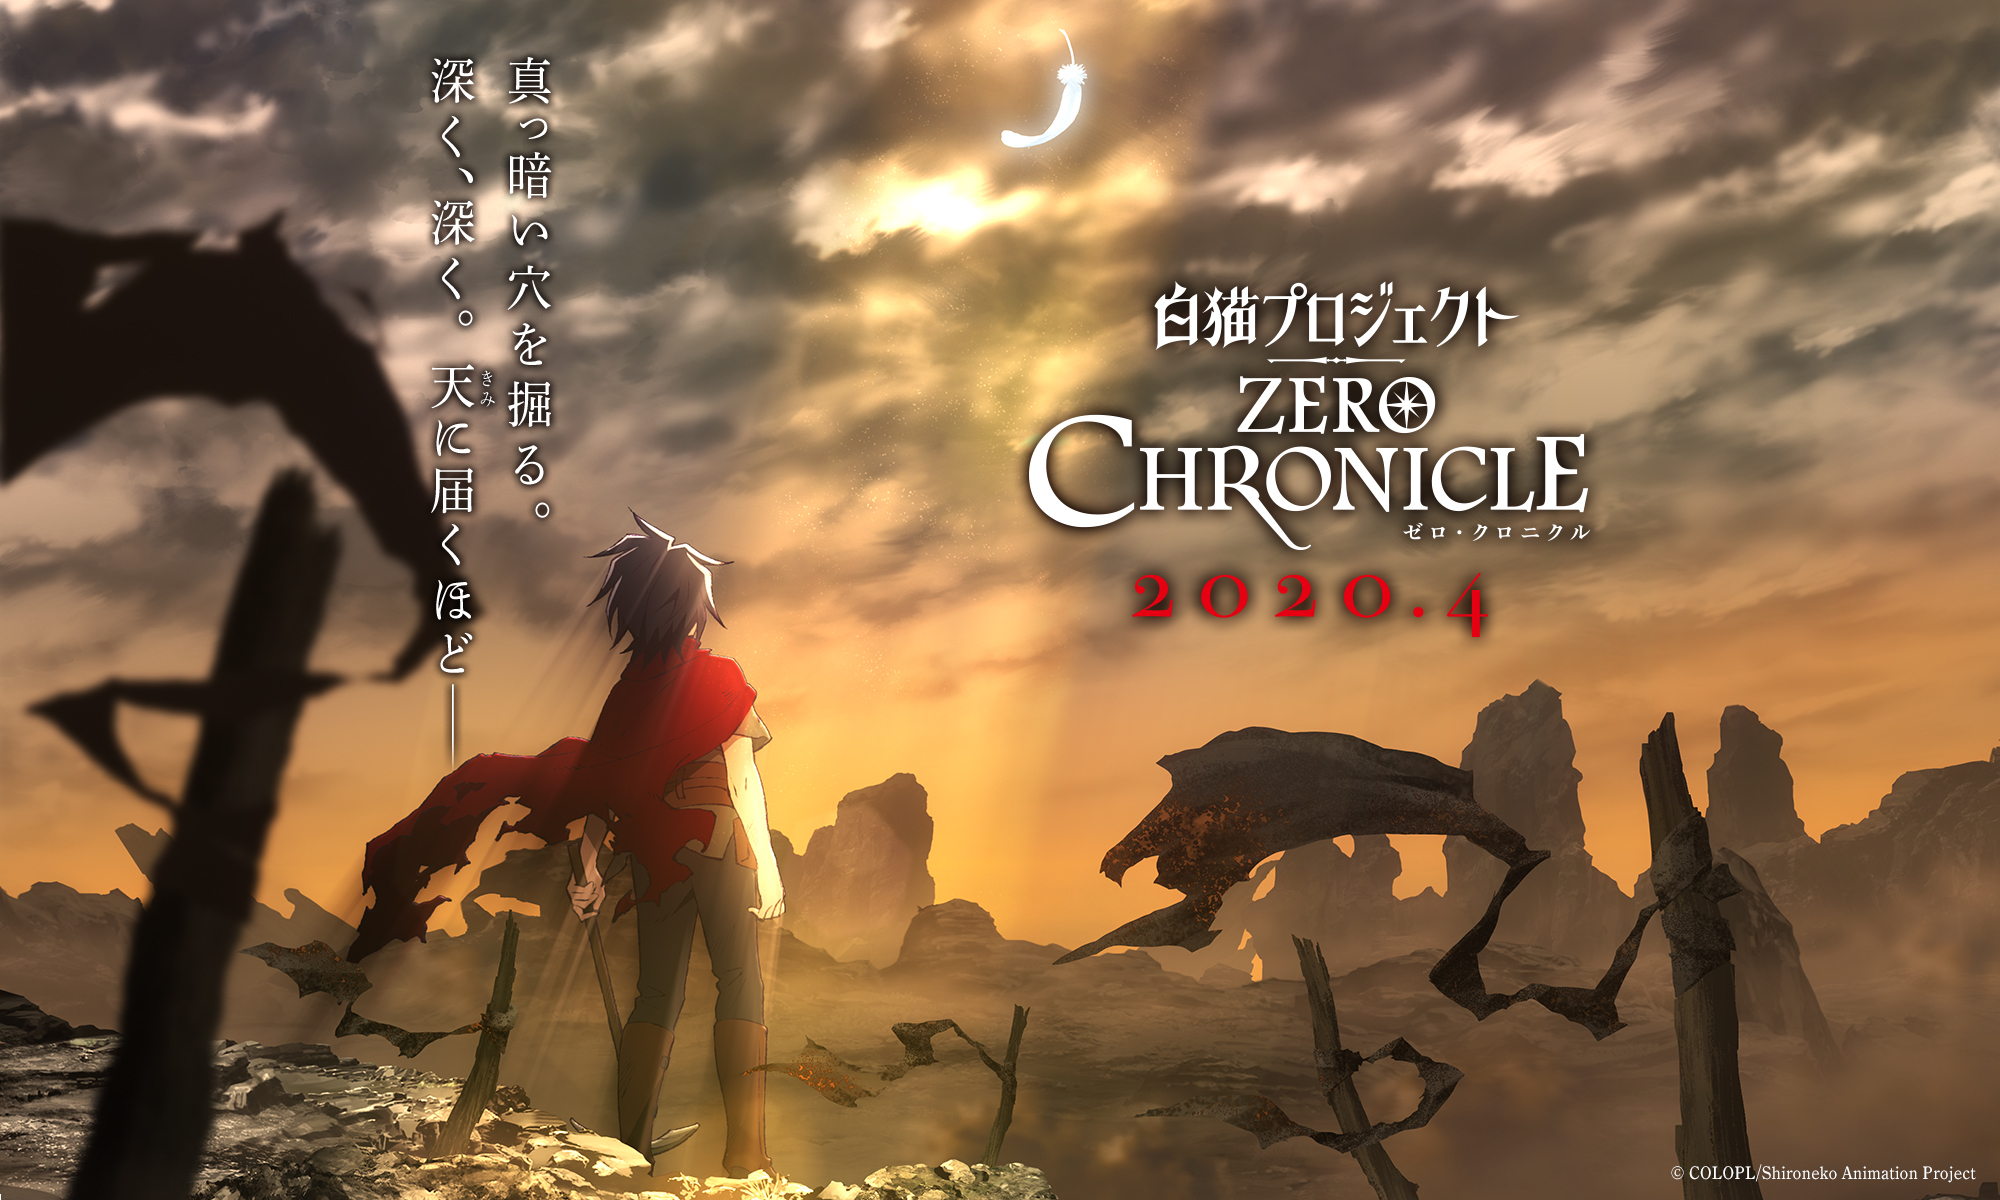 動畫 白貓project Zero Chronicle 釋出前導影像 製作團隊與主要聲優名單 Shironeko Project Zero Chronicle 巴哈姆特